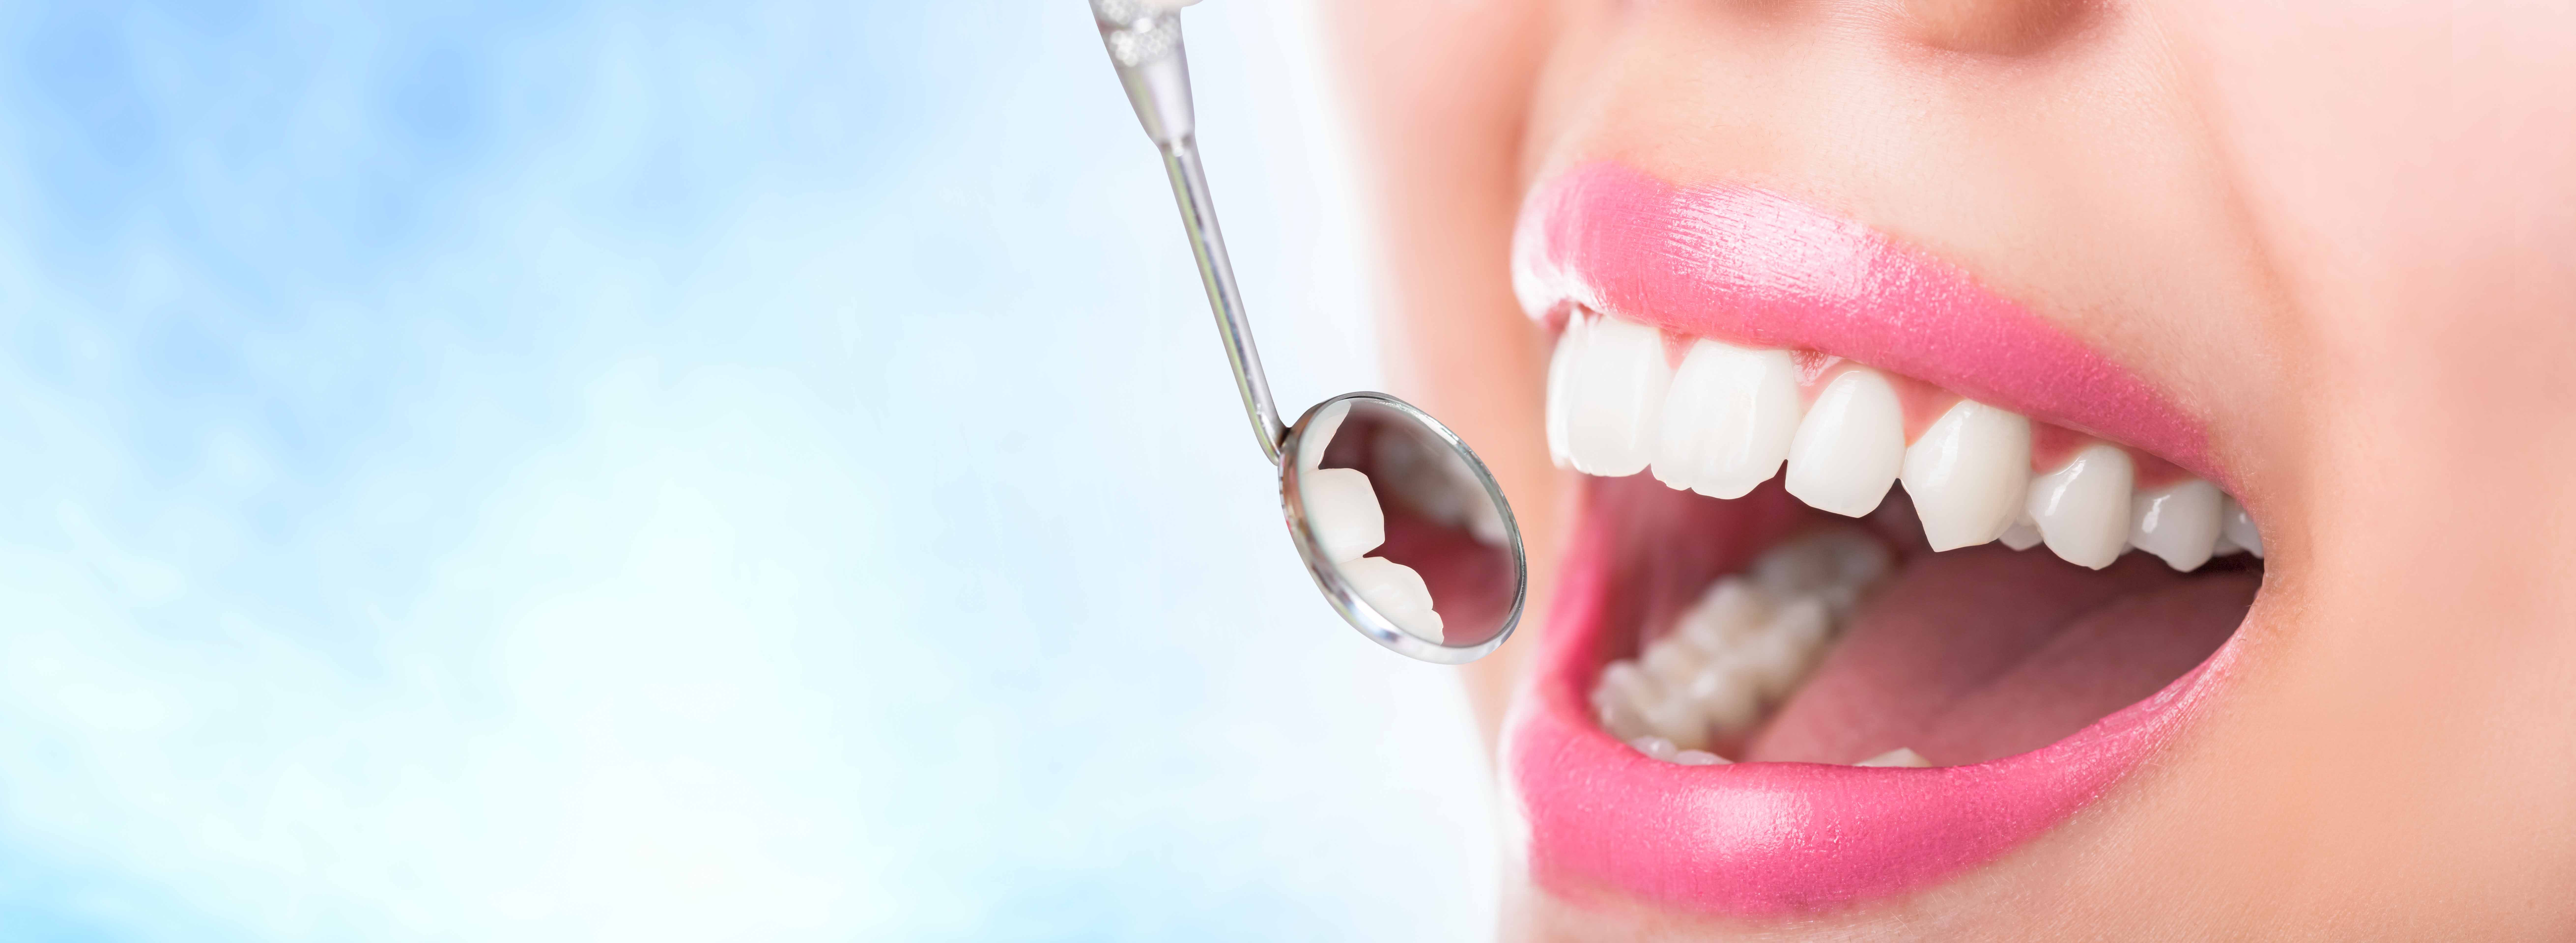 歯鏡で歯の状態を検査している女性